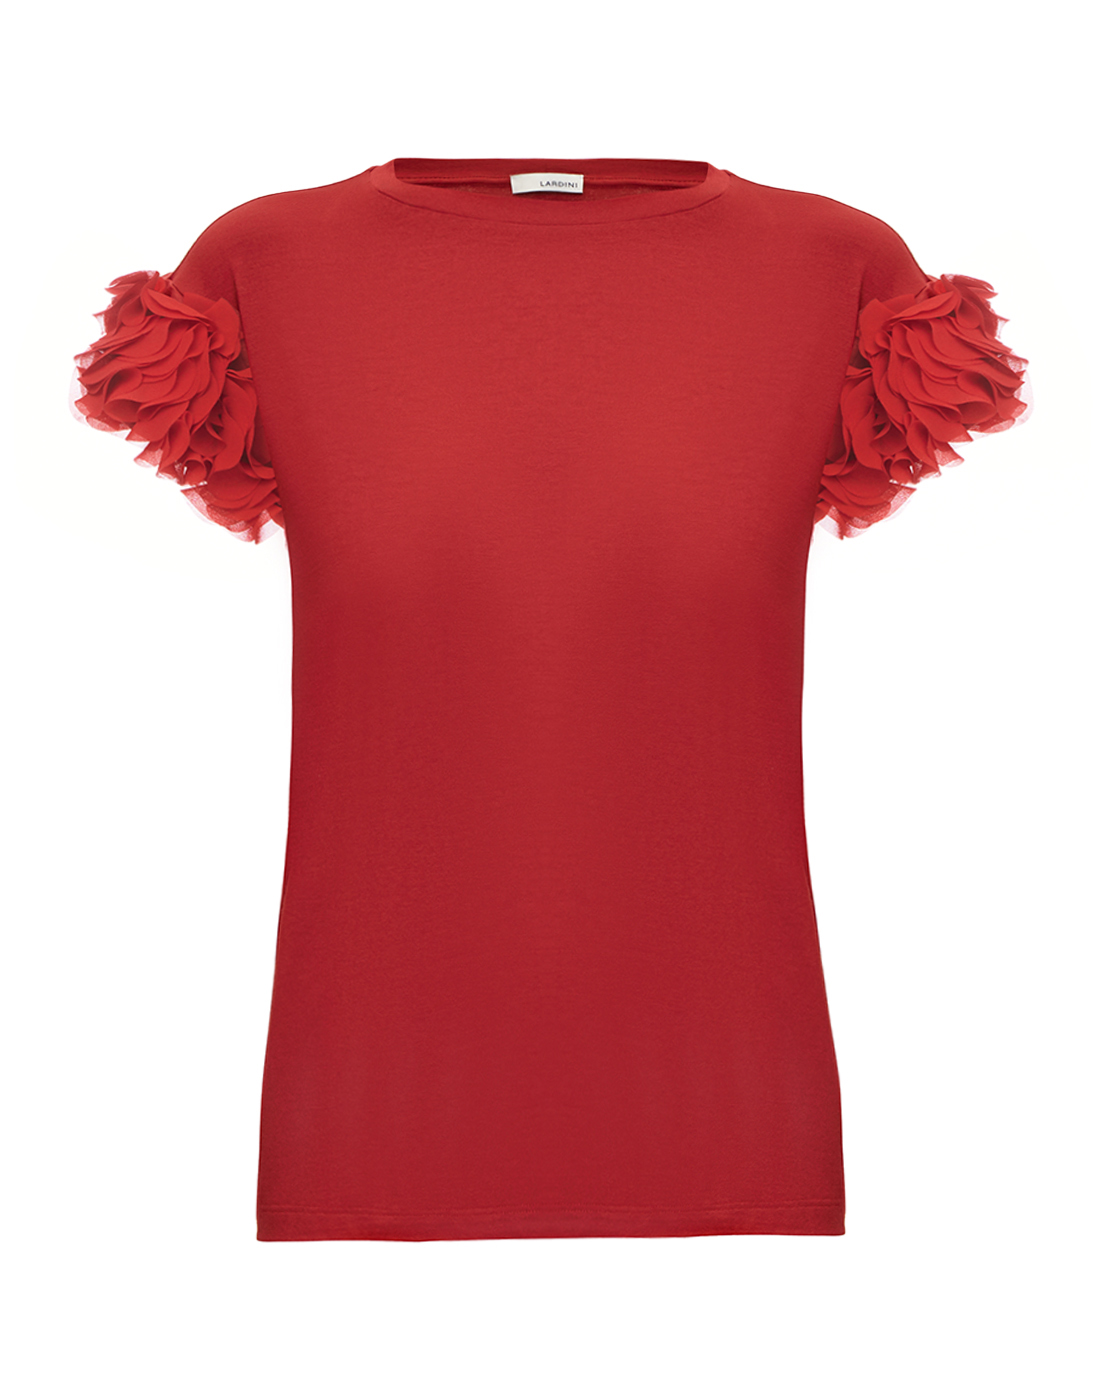 Женская красная футболка с рюшами  Lardini SP1.SLIM DA8025 600-1